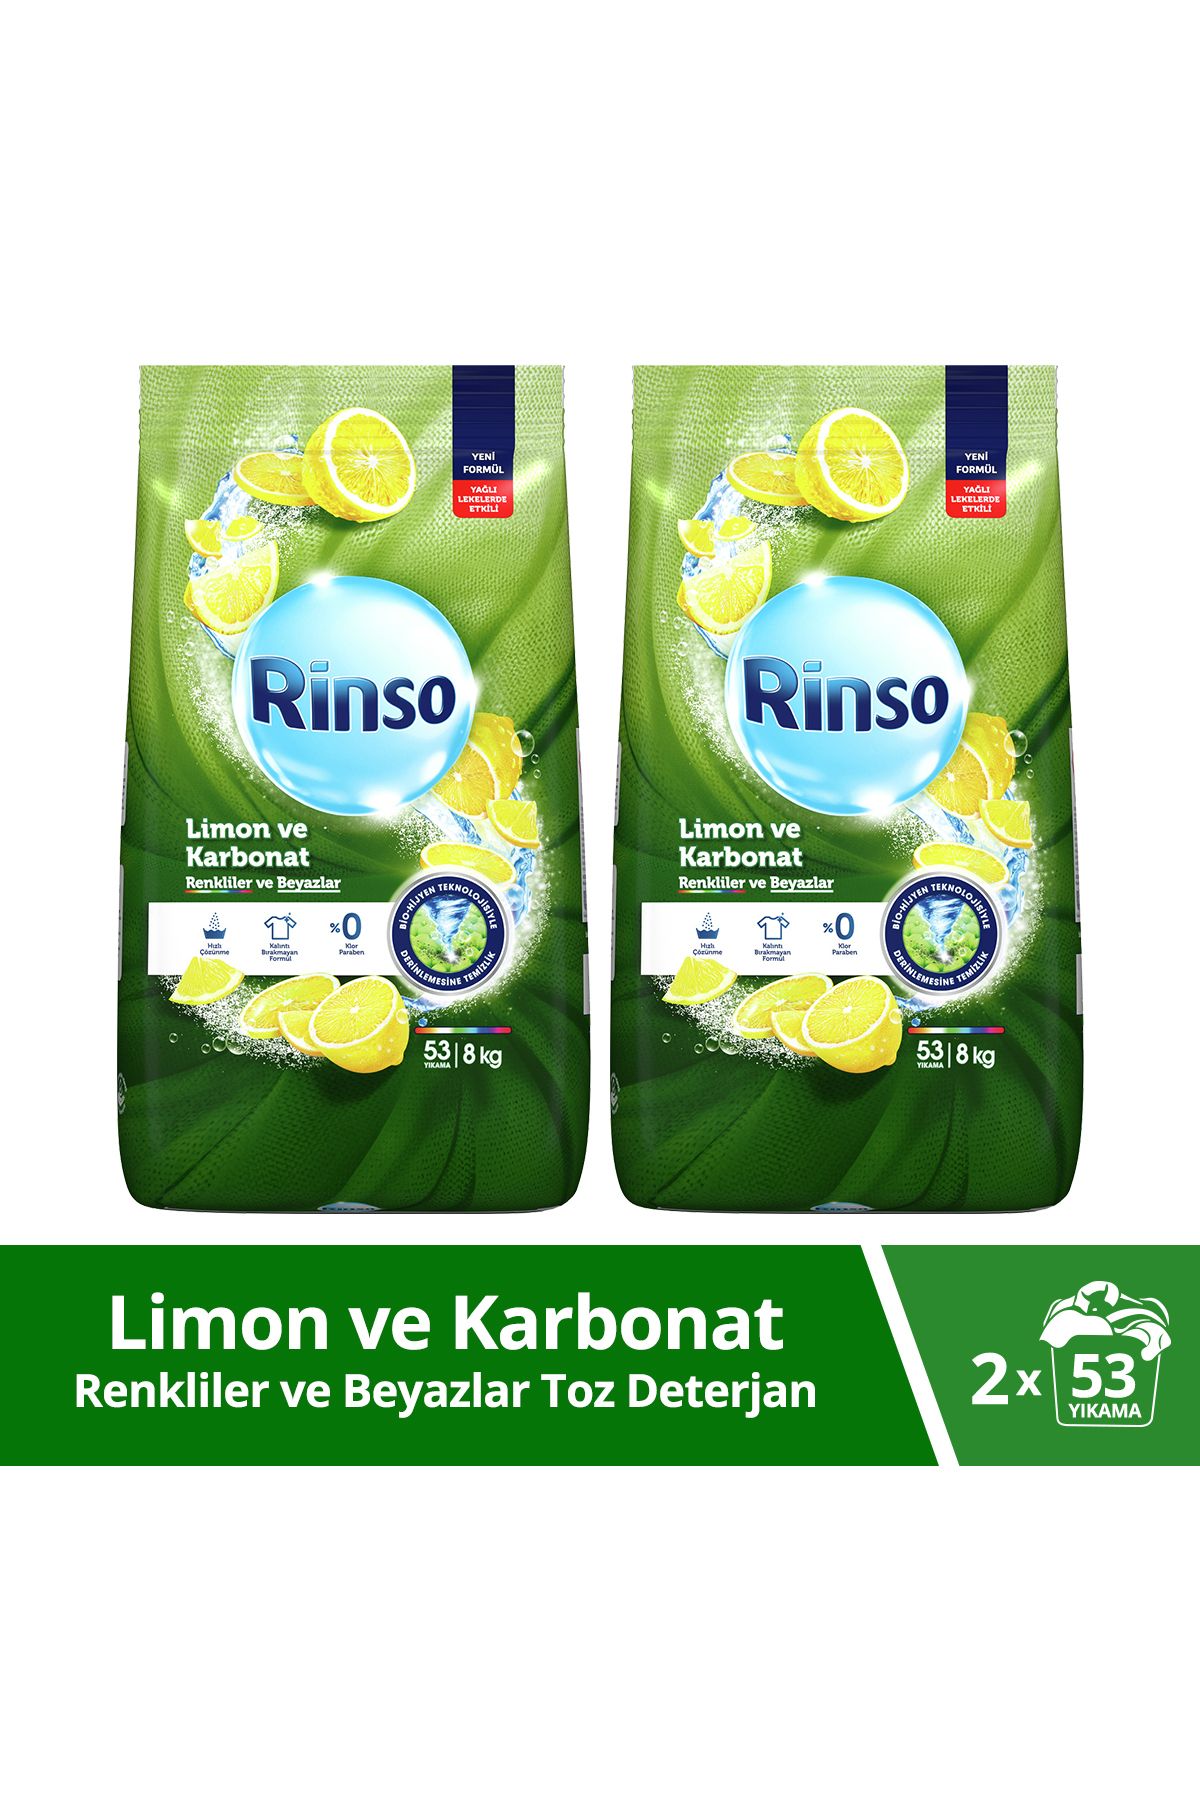 Rinso Toz Çamaşır Deterjanı Renkliler Ve Beyazlar Için Limon Ve Karbonat 8 Kgx2